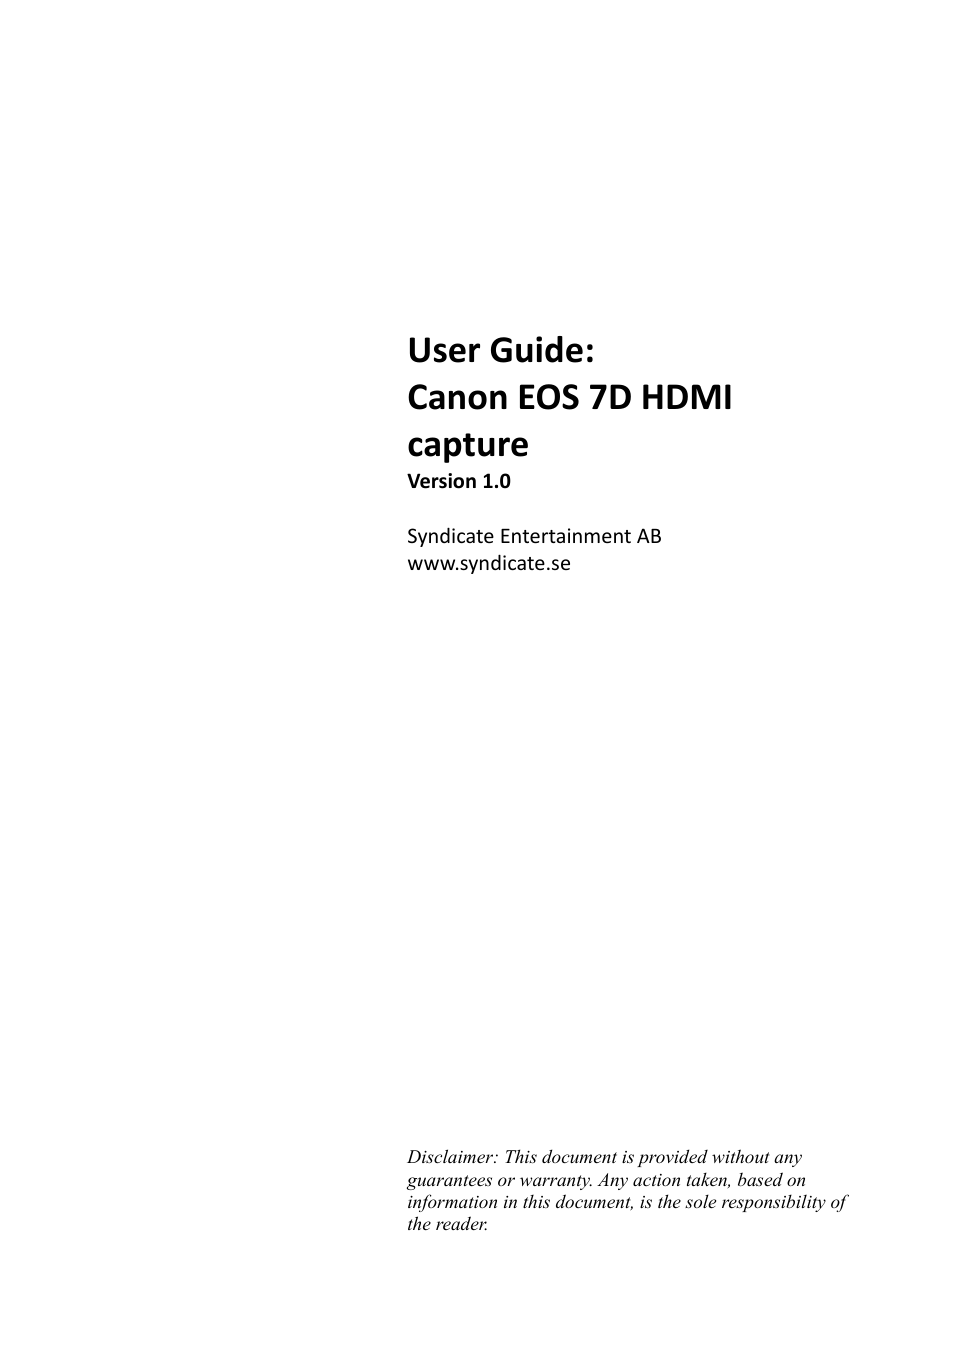 EOS 7D HDMI (Page 1)